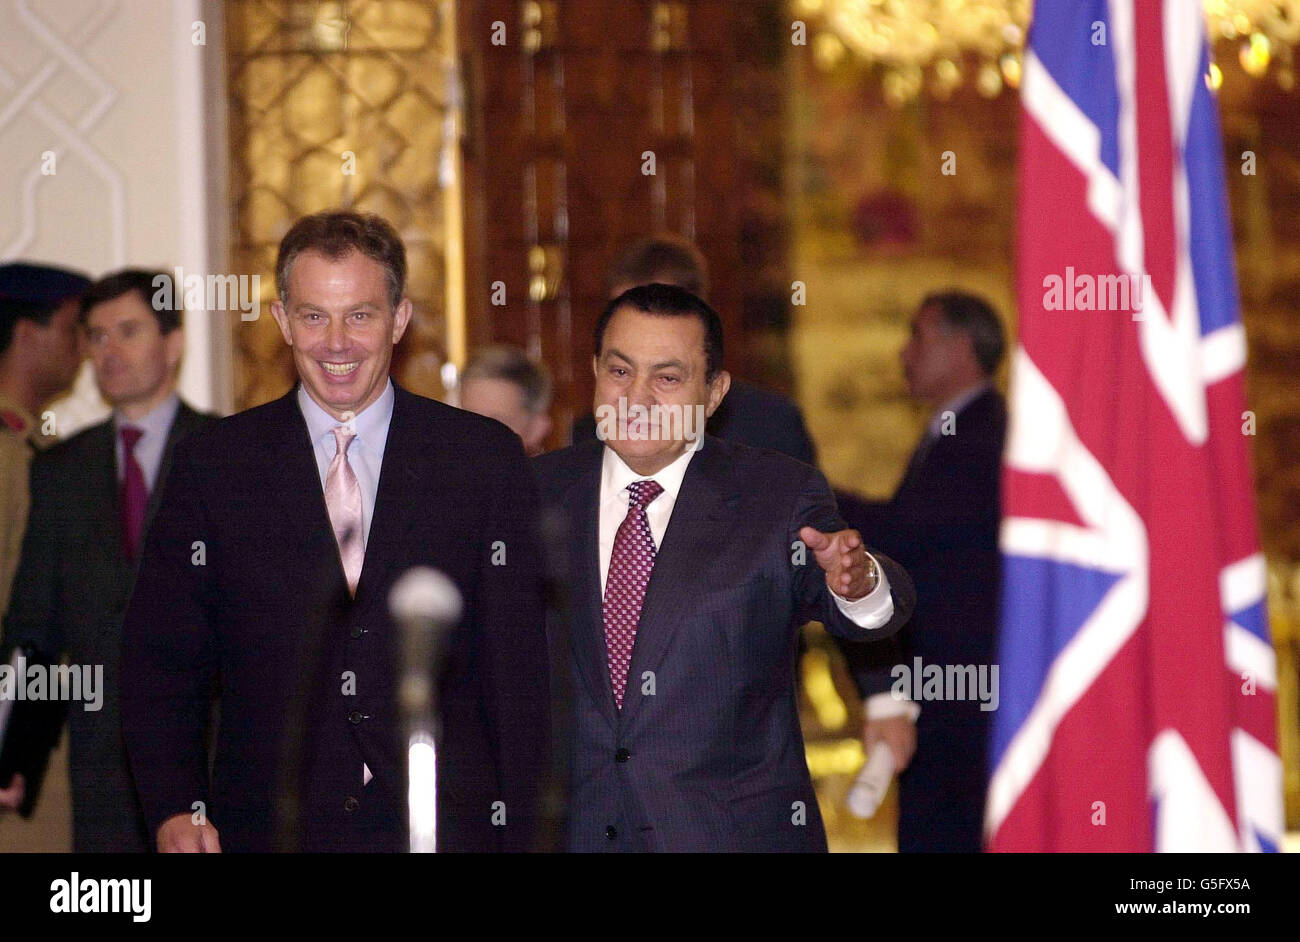 Il primo ministro britannico Tony Blair (L) con il presidente Hosni Mubarak, al Cairo, sull'ultima tappa della sua missione diplomatica in Medio Oriente dopo l'ondata più pesante di attacchi aerei contro l'Afghanistan. Foto Stock